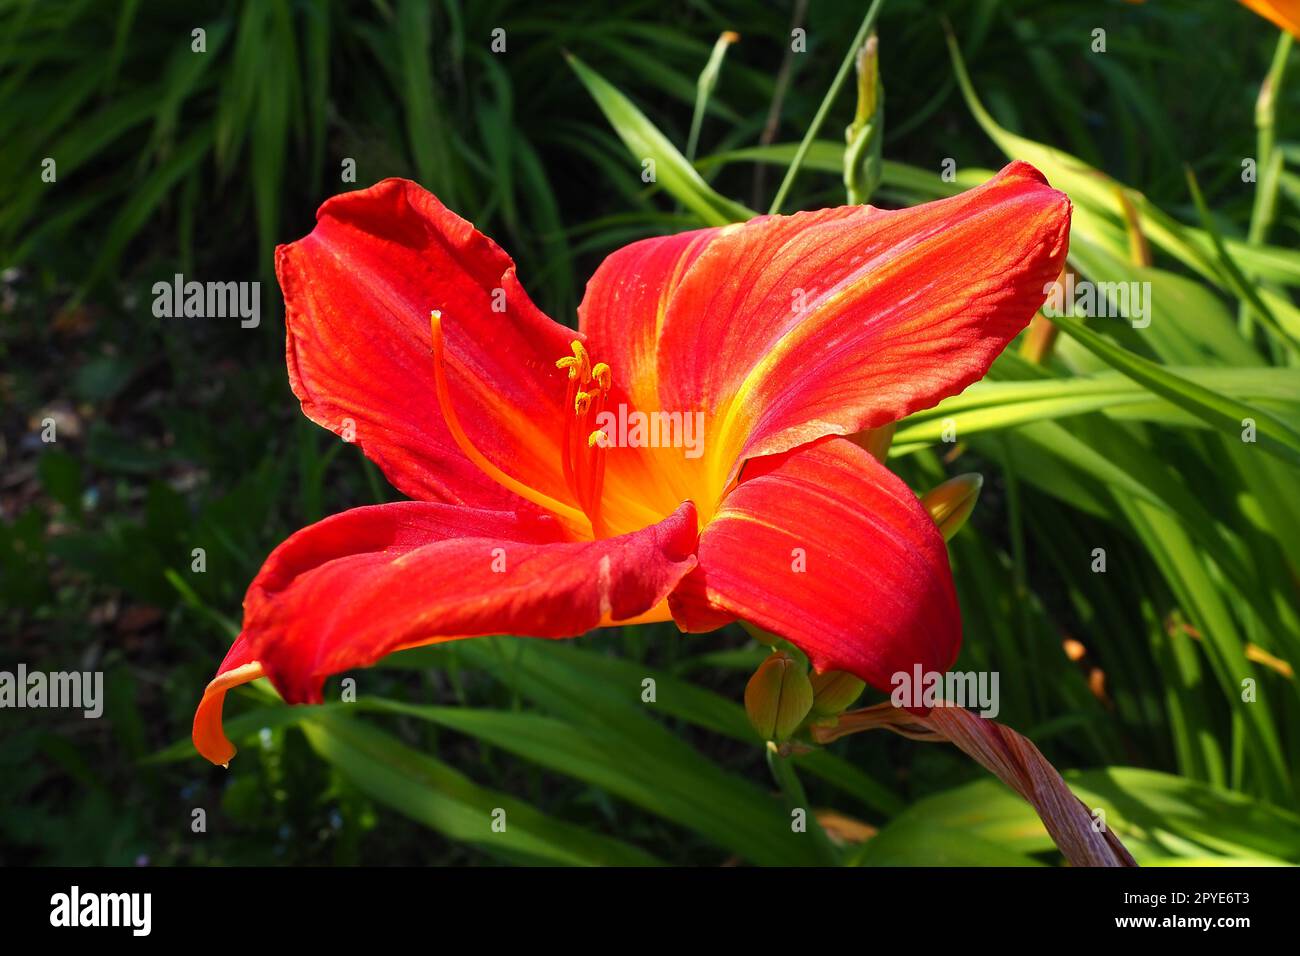 Hemerocallis hybride Anzac est un genre de plantes de la famille des Lilaynikov Asphodelaceae. Belles fleurs de lys rouges à six pétales. Longues feuilles vertes minces. Floraison et production de cultures comme passe-temps Banque D'Images